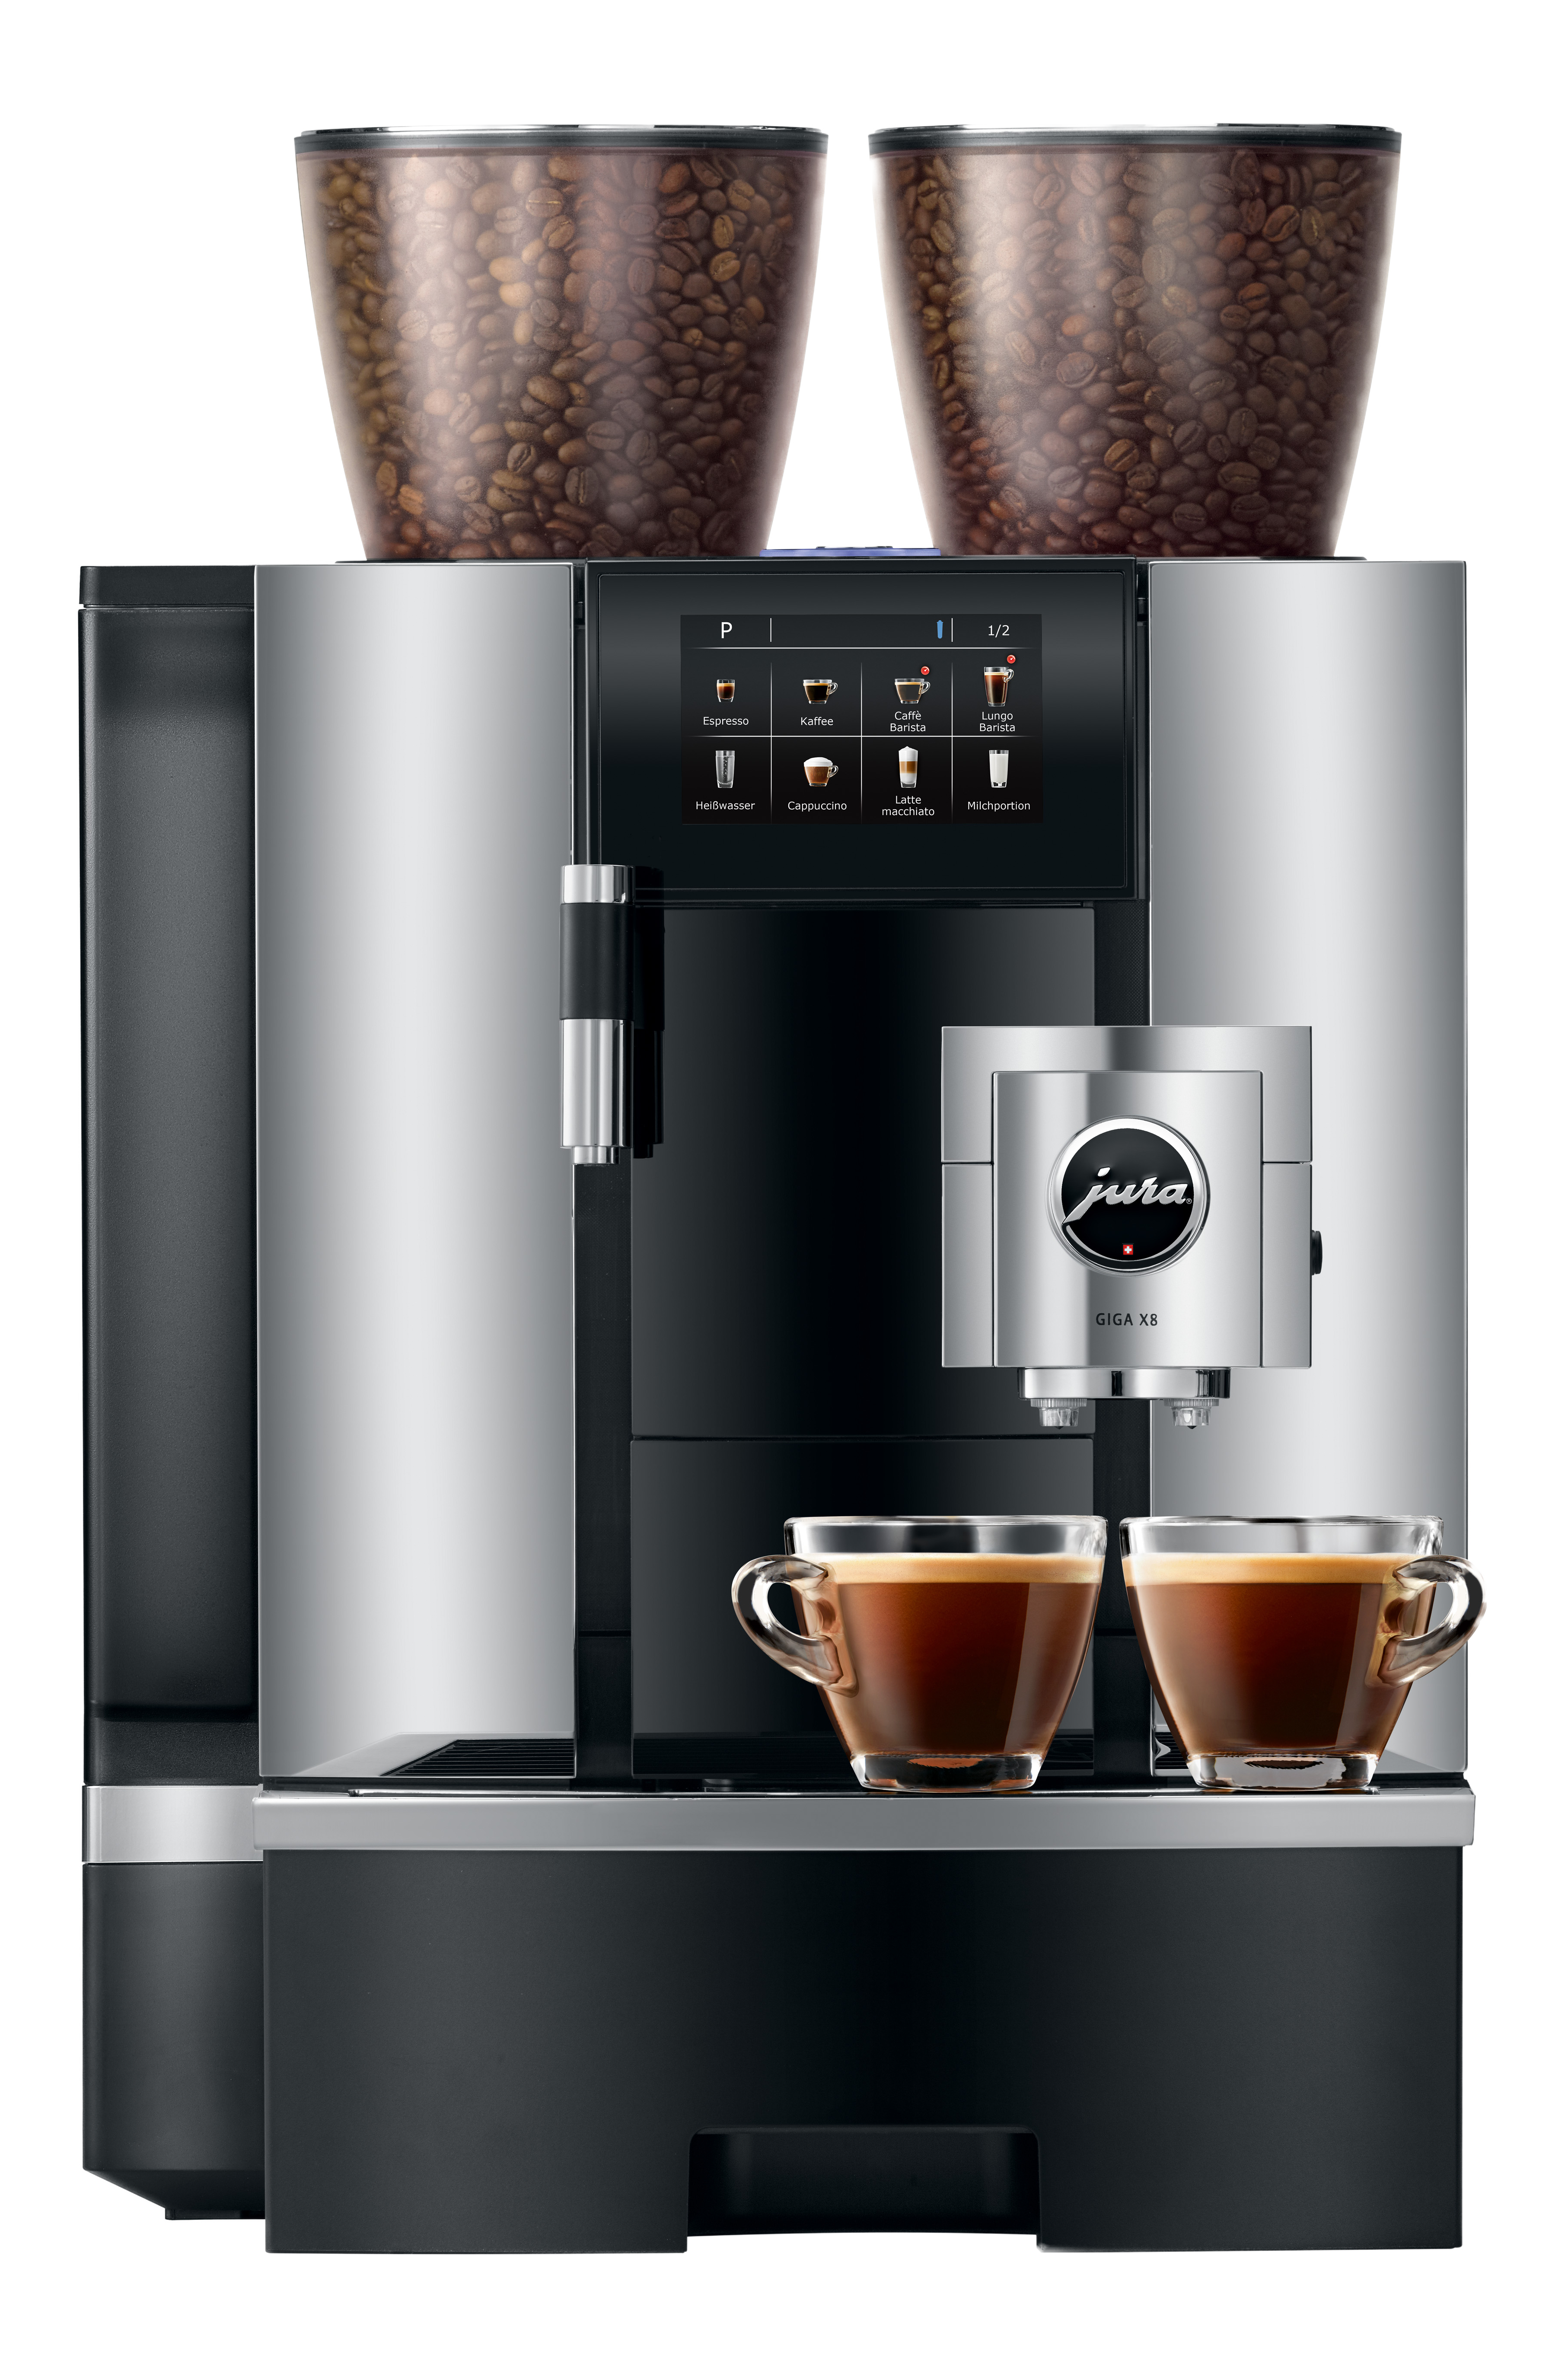 JURA zakelijke koffiemachine | KoffiePartners